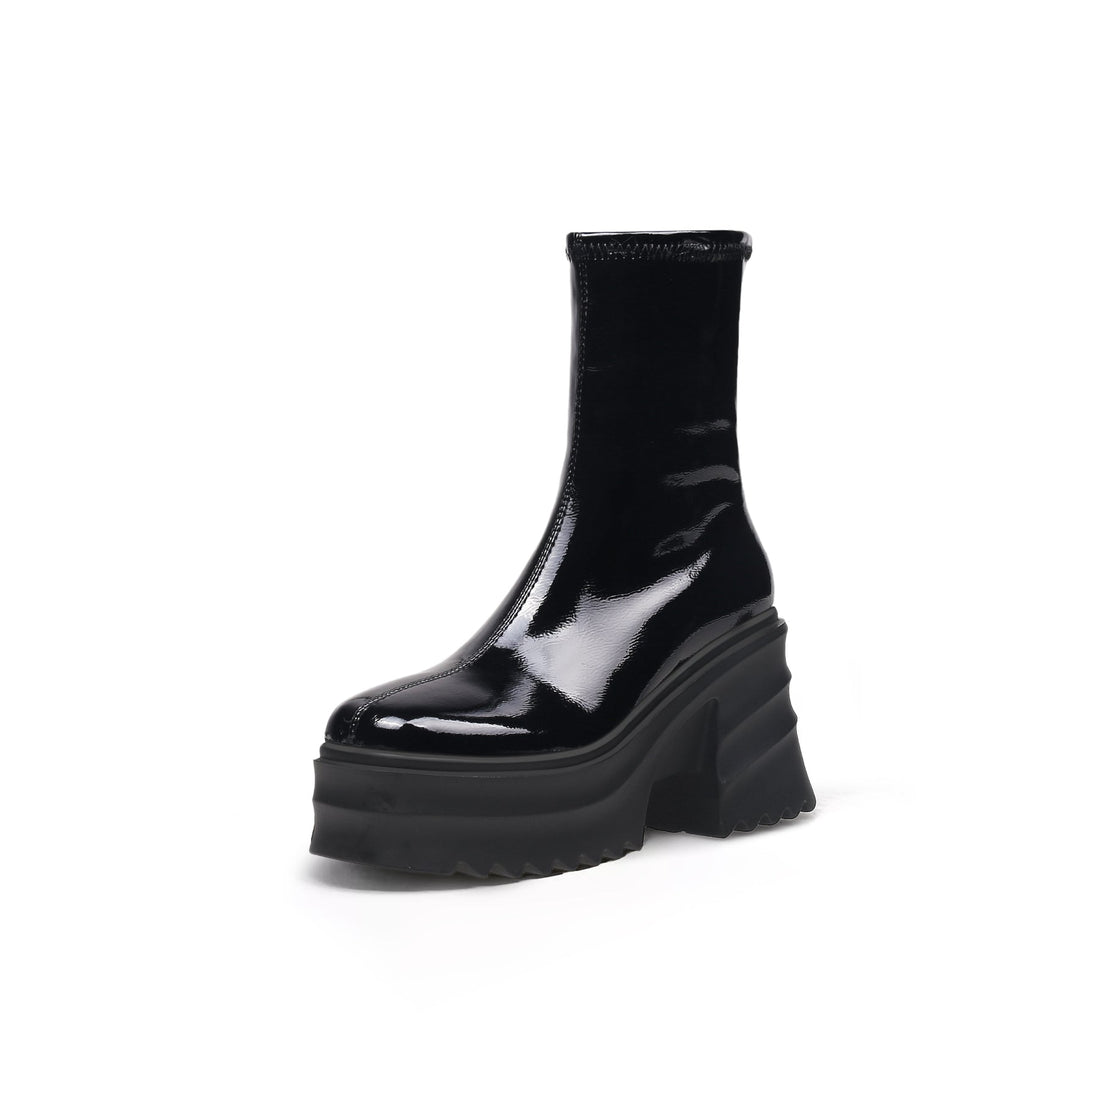 Patent Cloudy Platform Black Boots - 0cm